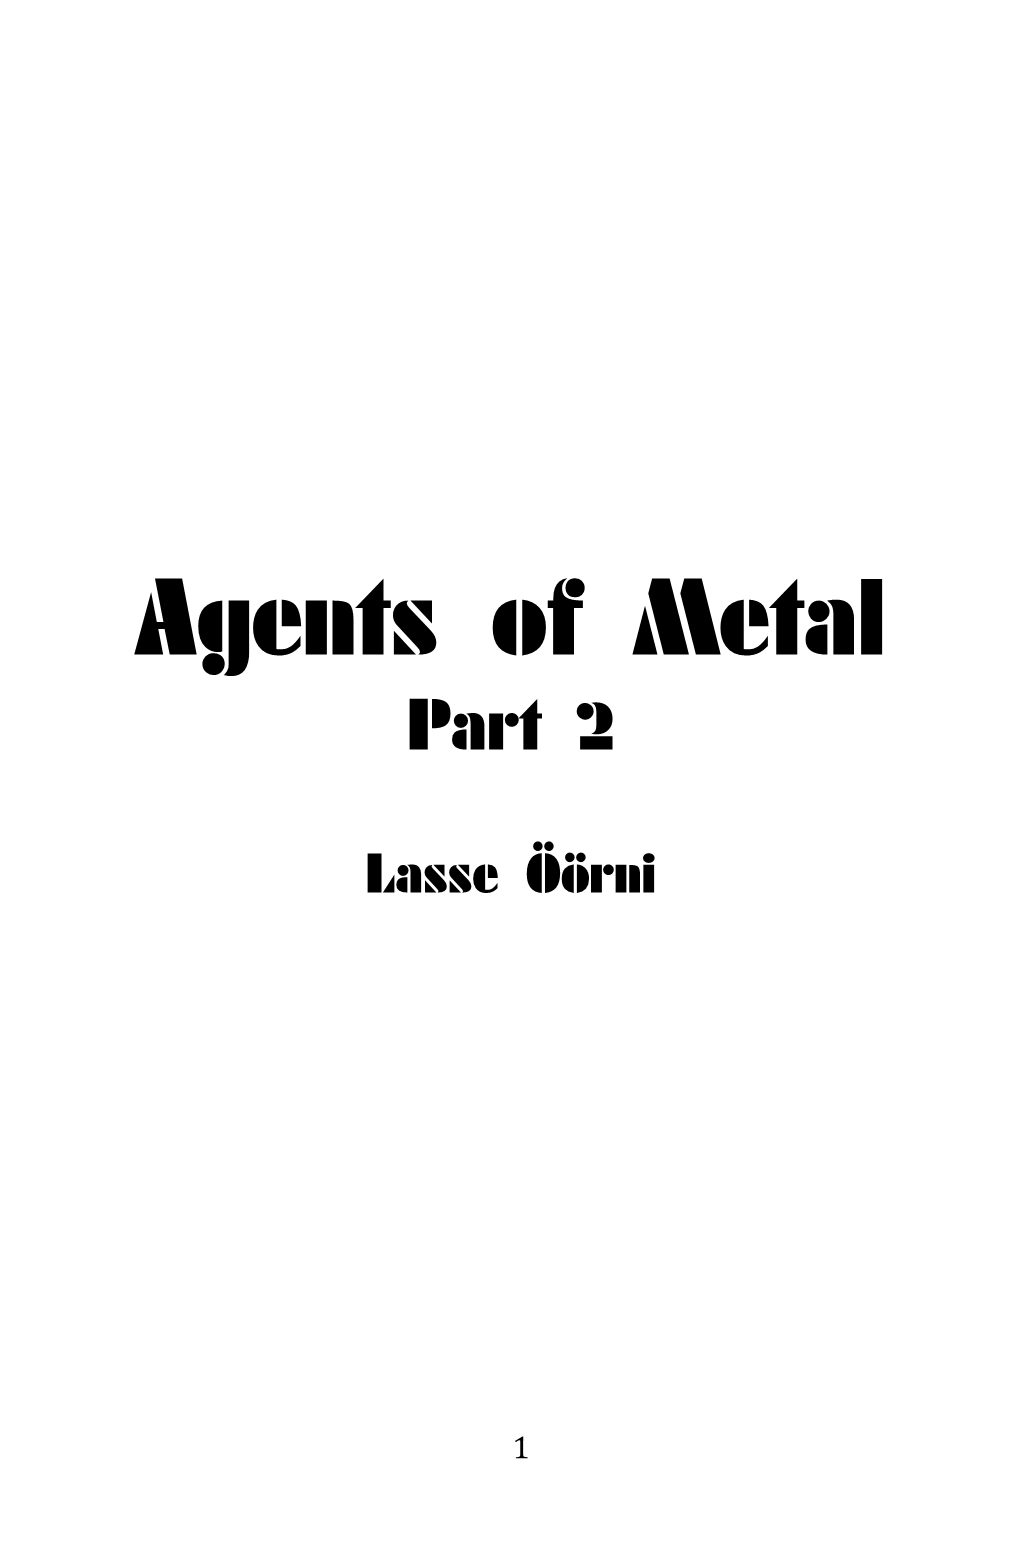 Agents of Metal Pt.2